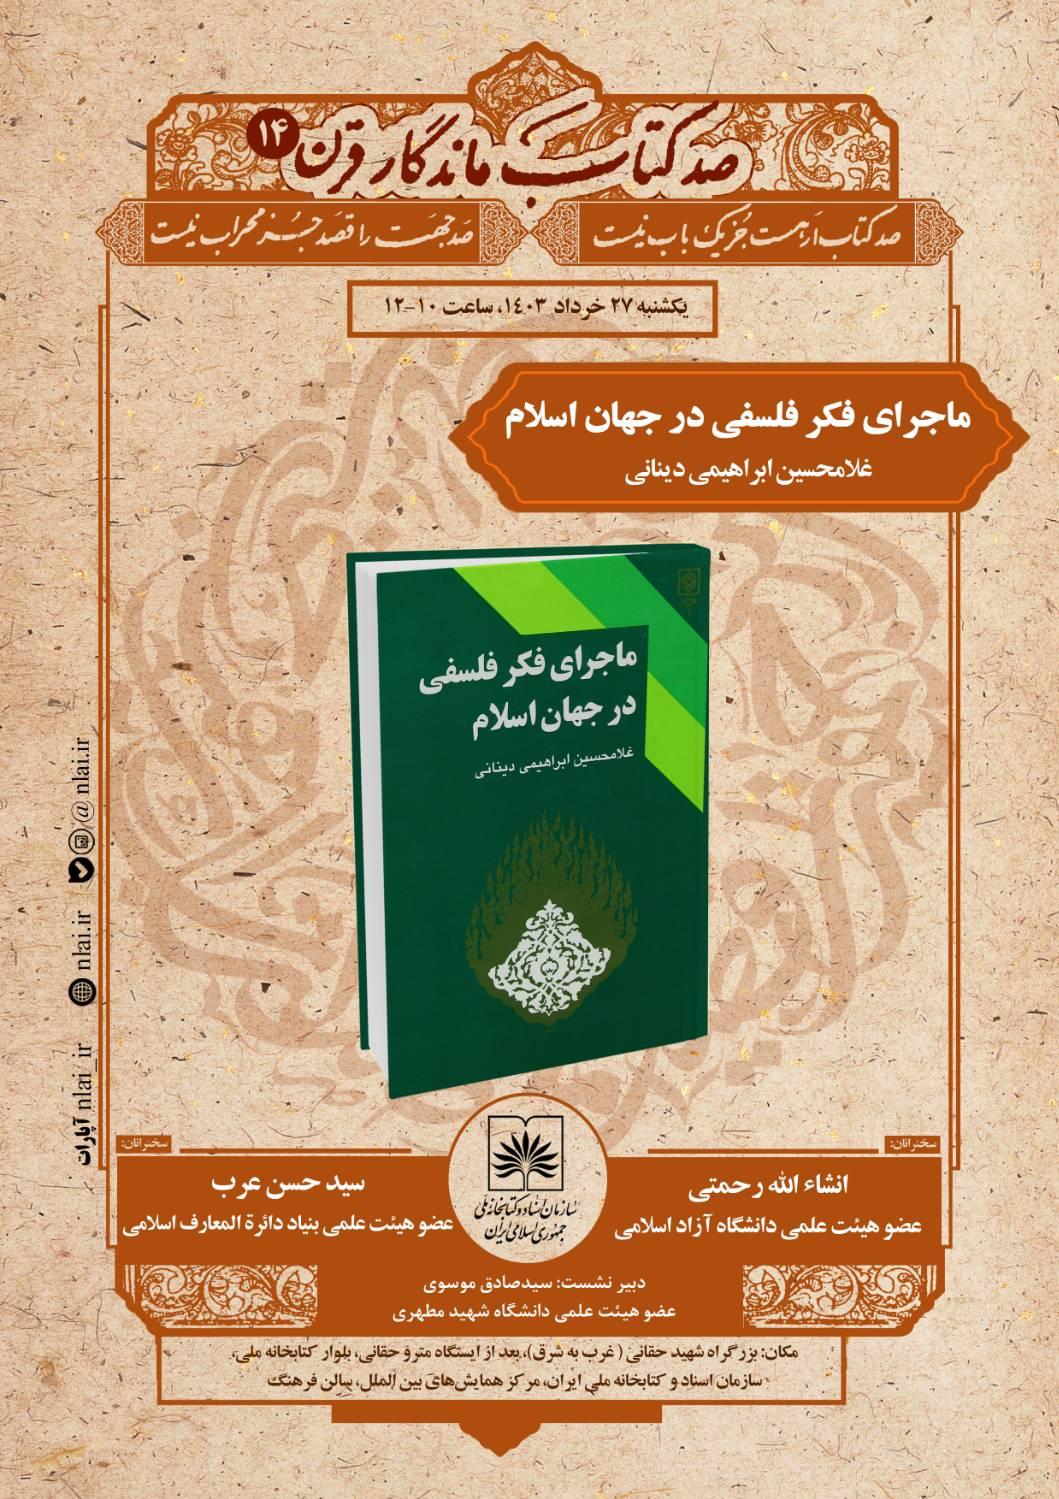 کتاب «ماجرای فکر فلسفی در جهان اسلام» معرفی و بررسی می شود